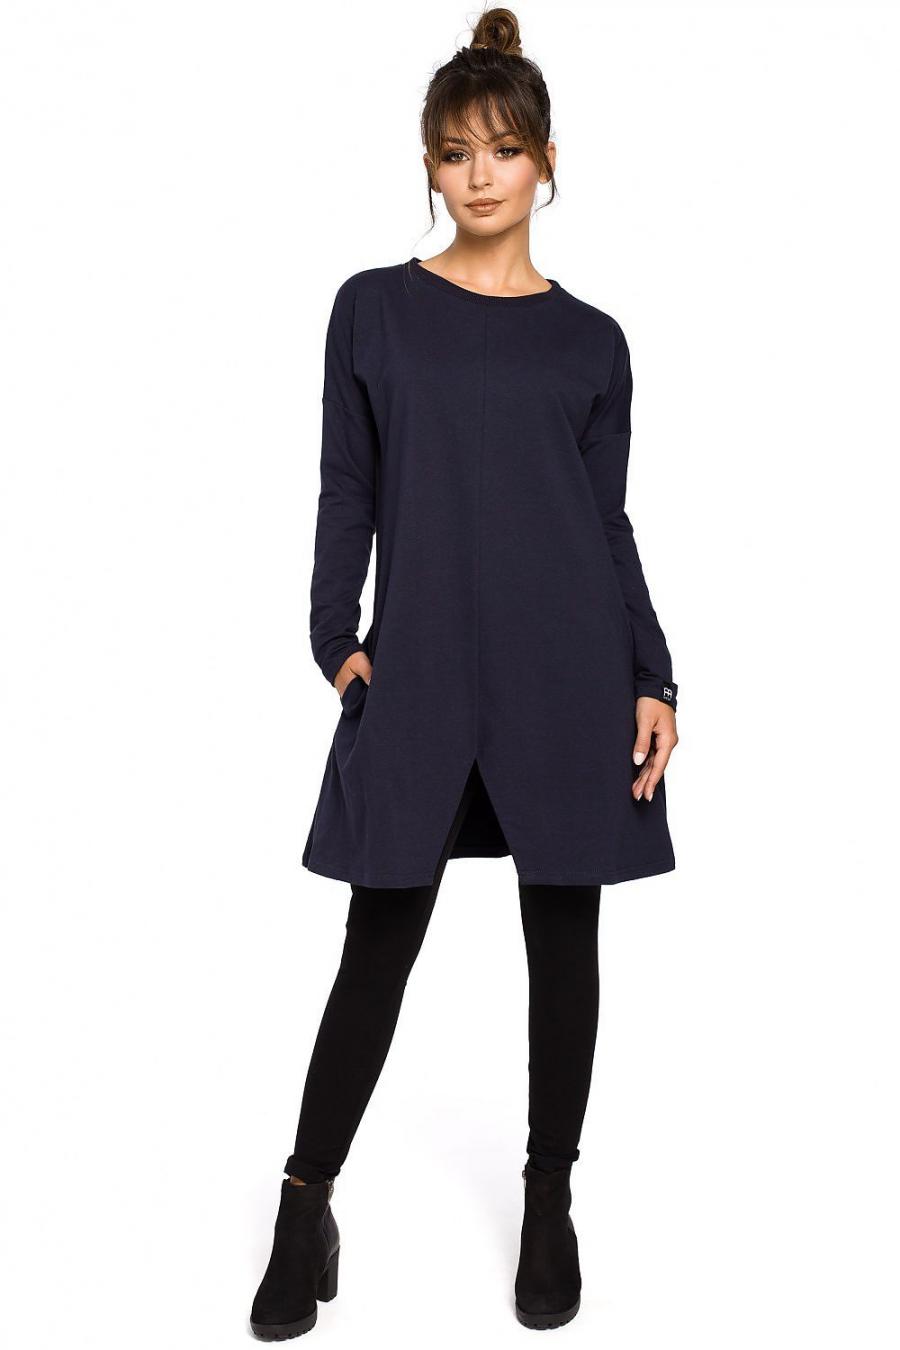 Ostatní značky šaty dámské 104254 - Tmavě modrá - velikost L//XL